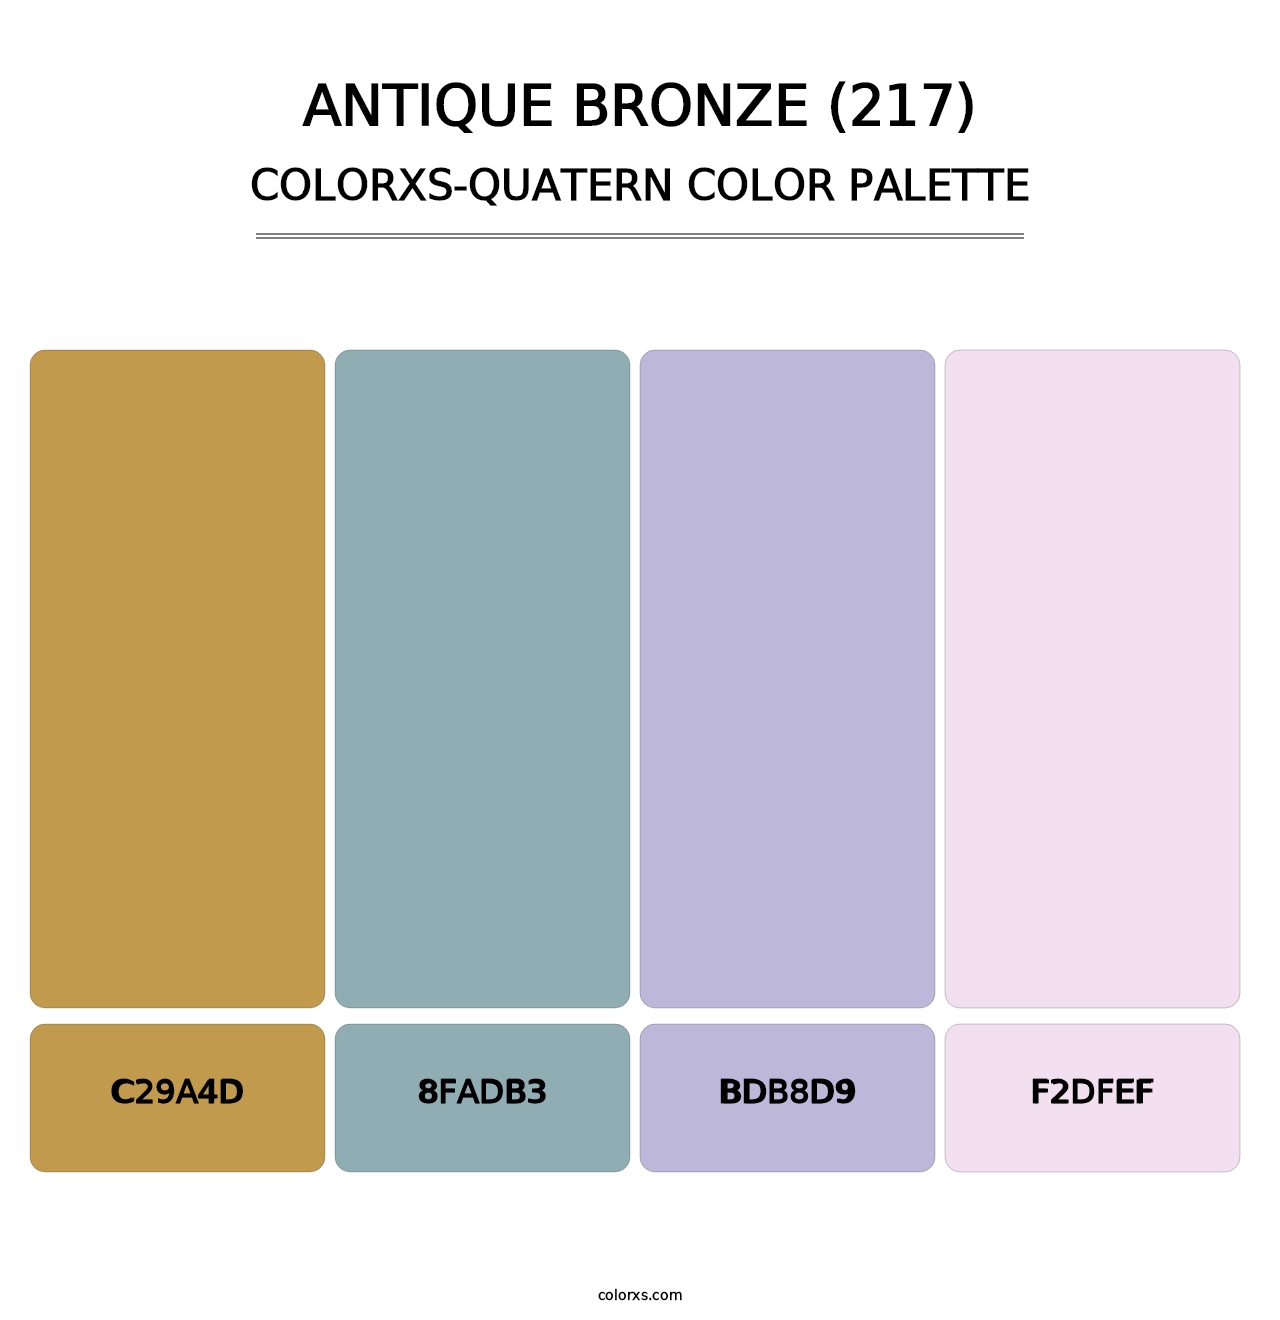 Antique Bronze (217) - Colorxs Quatern Palette